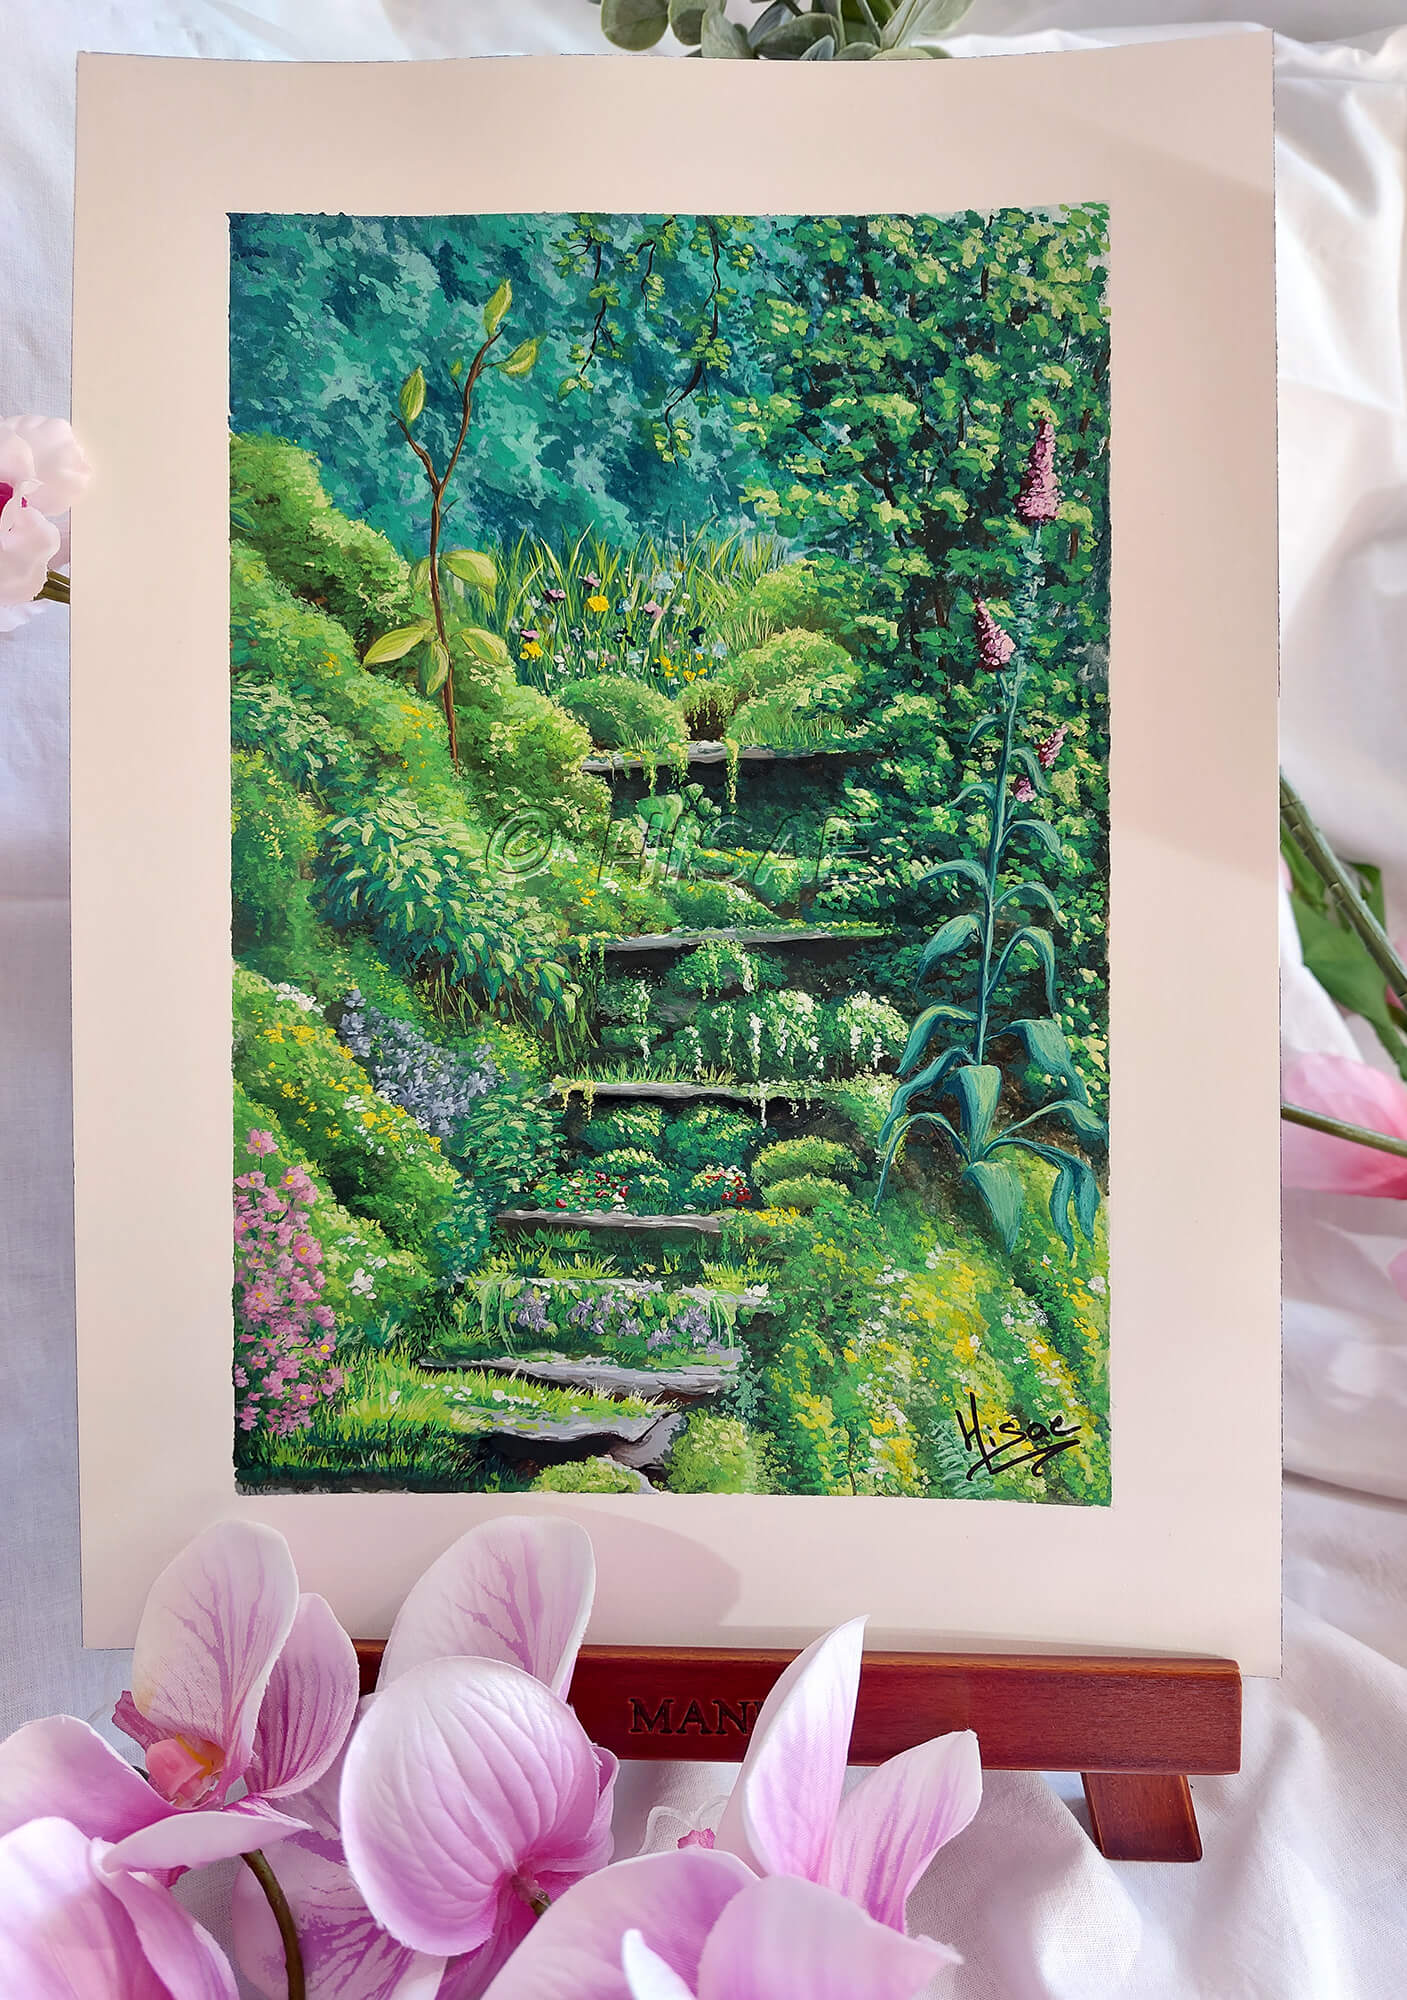 Dessin original à la gouache présenté sur chevalet, représentant un escalier perdu dans la nature et croulant sous la verdure @Hisae illustrations